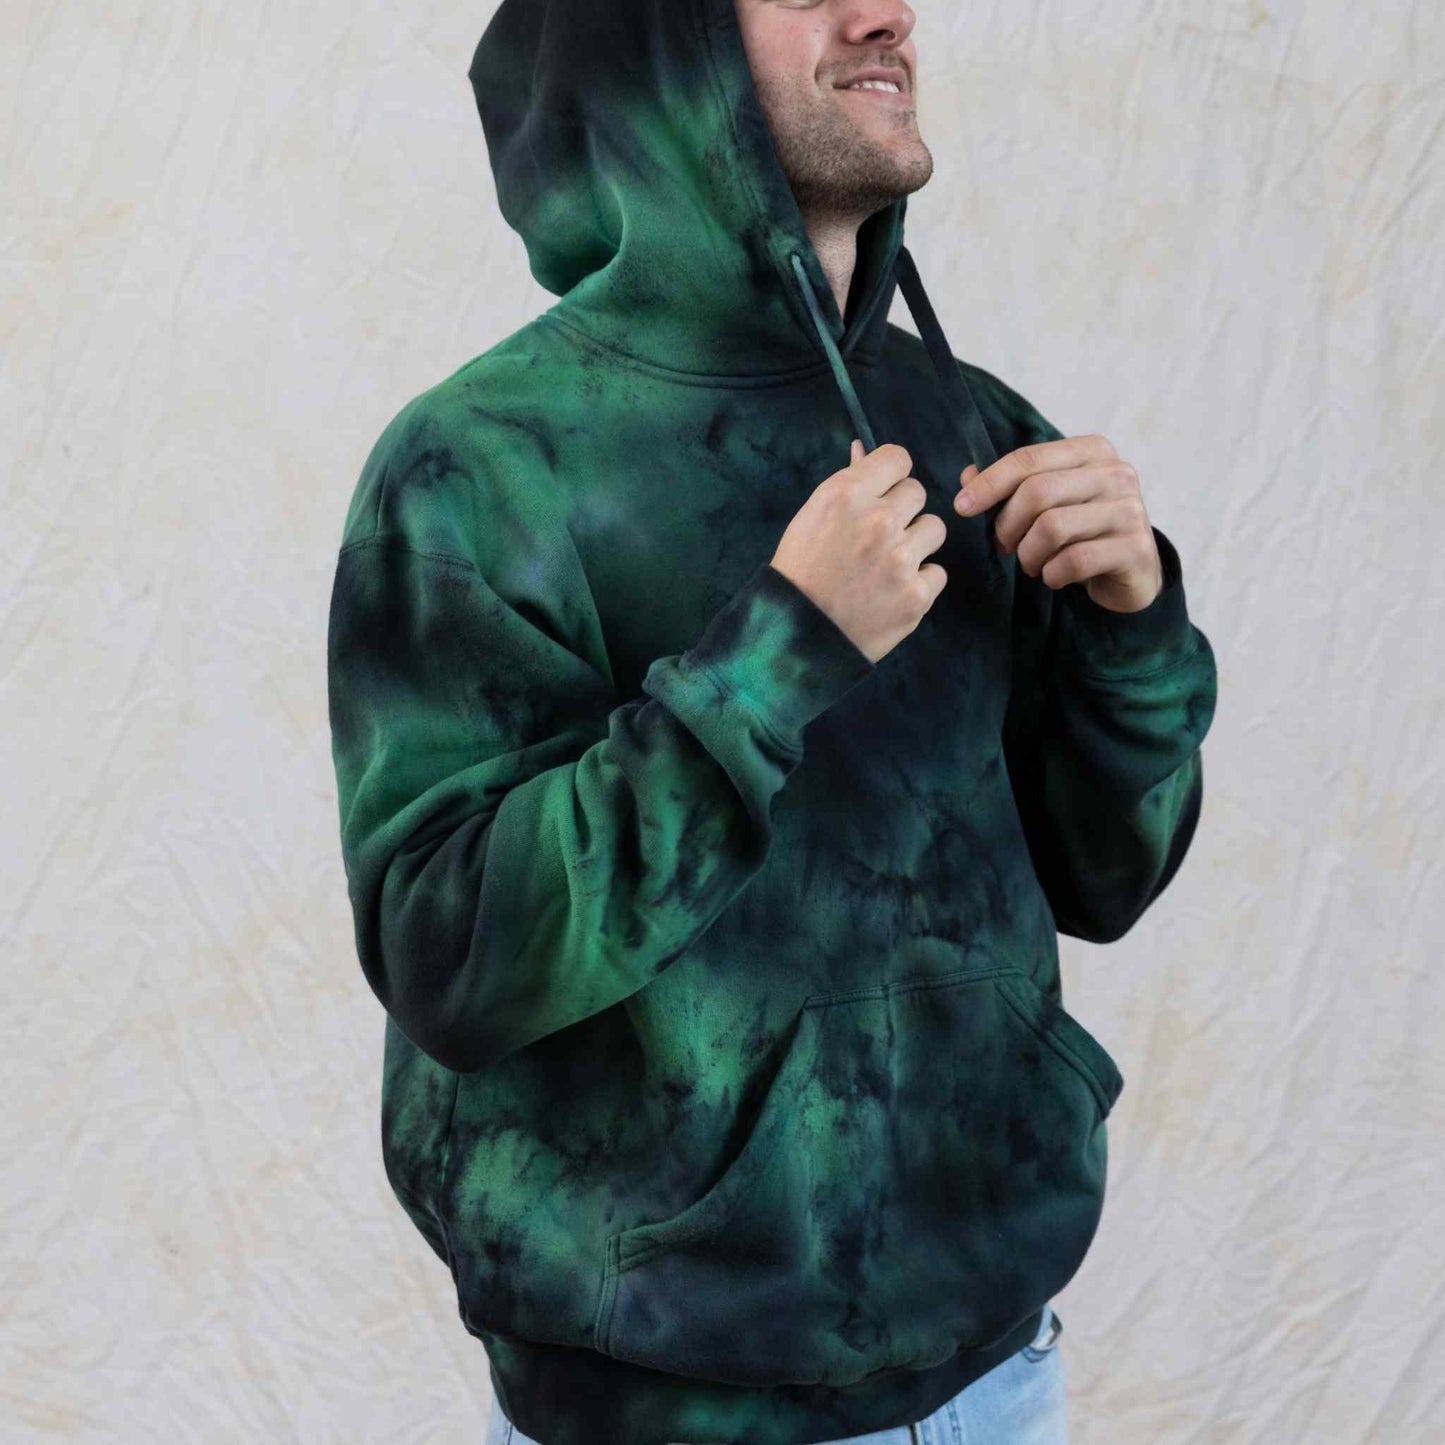 Alien black and green tie dye hoodie unisex dark hoodie fleece sweater –  Masha Apparel